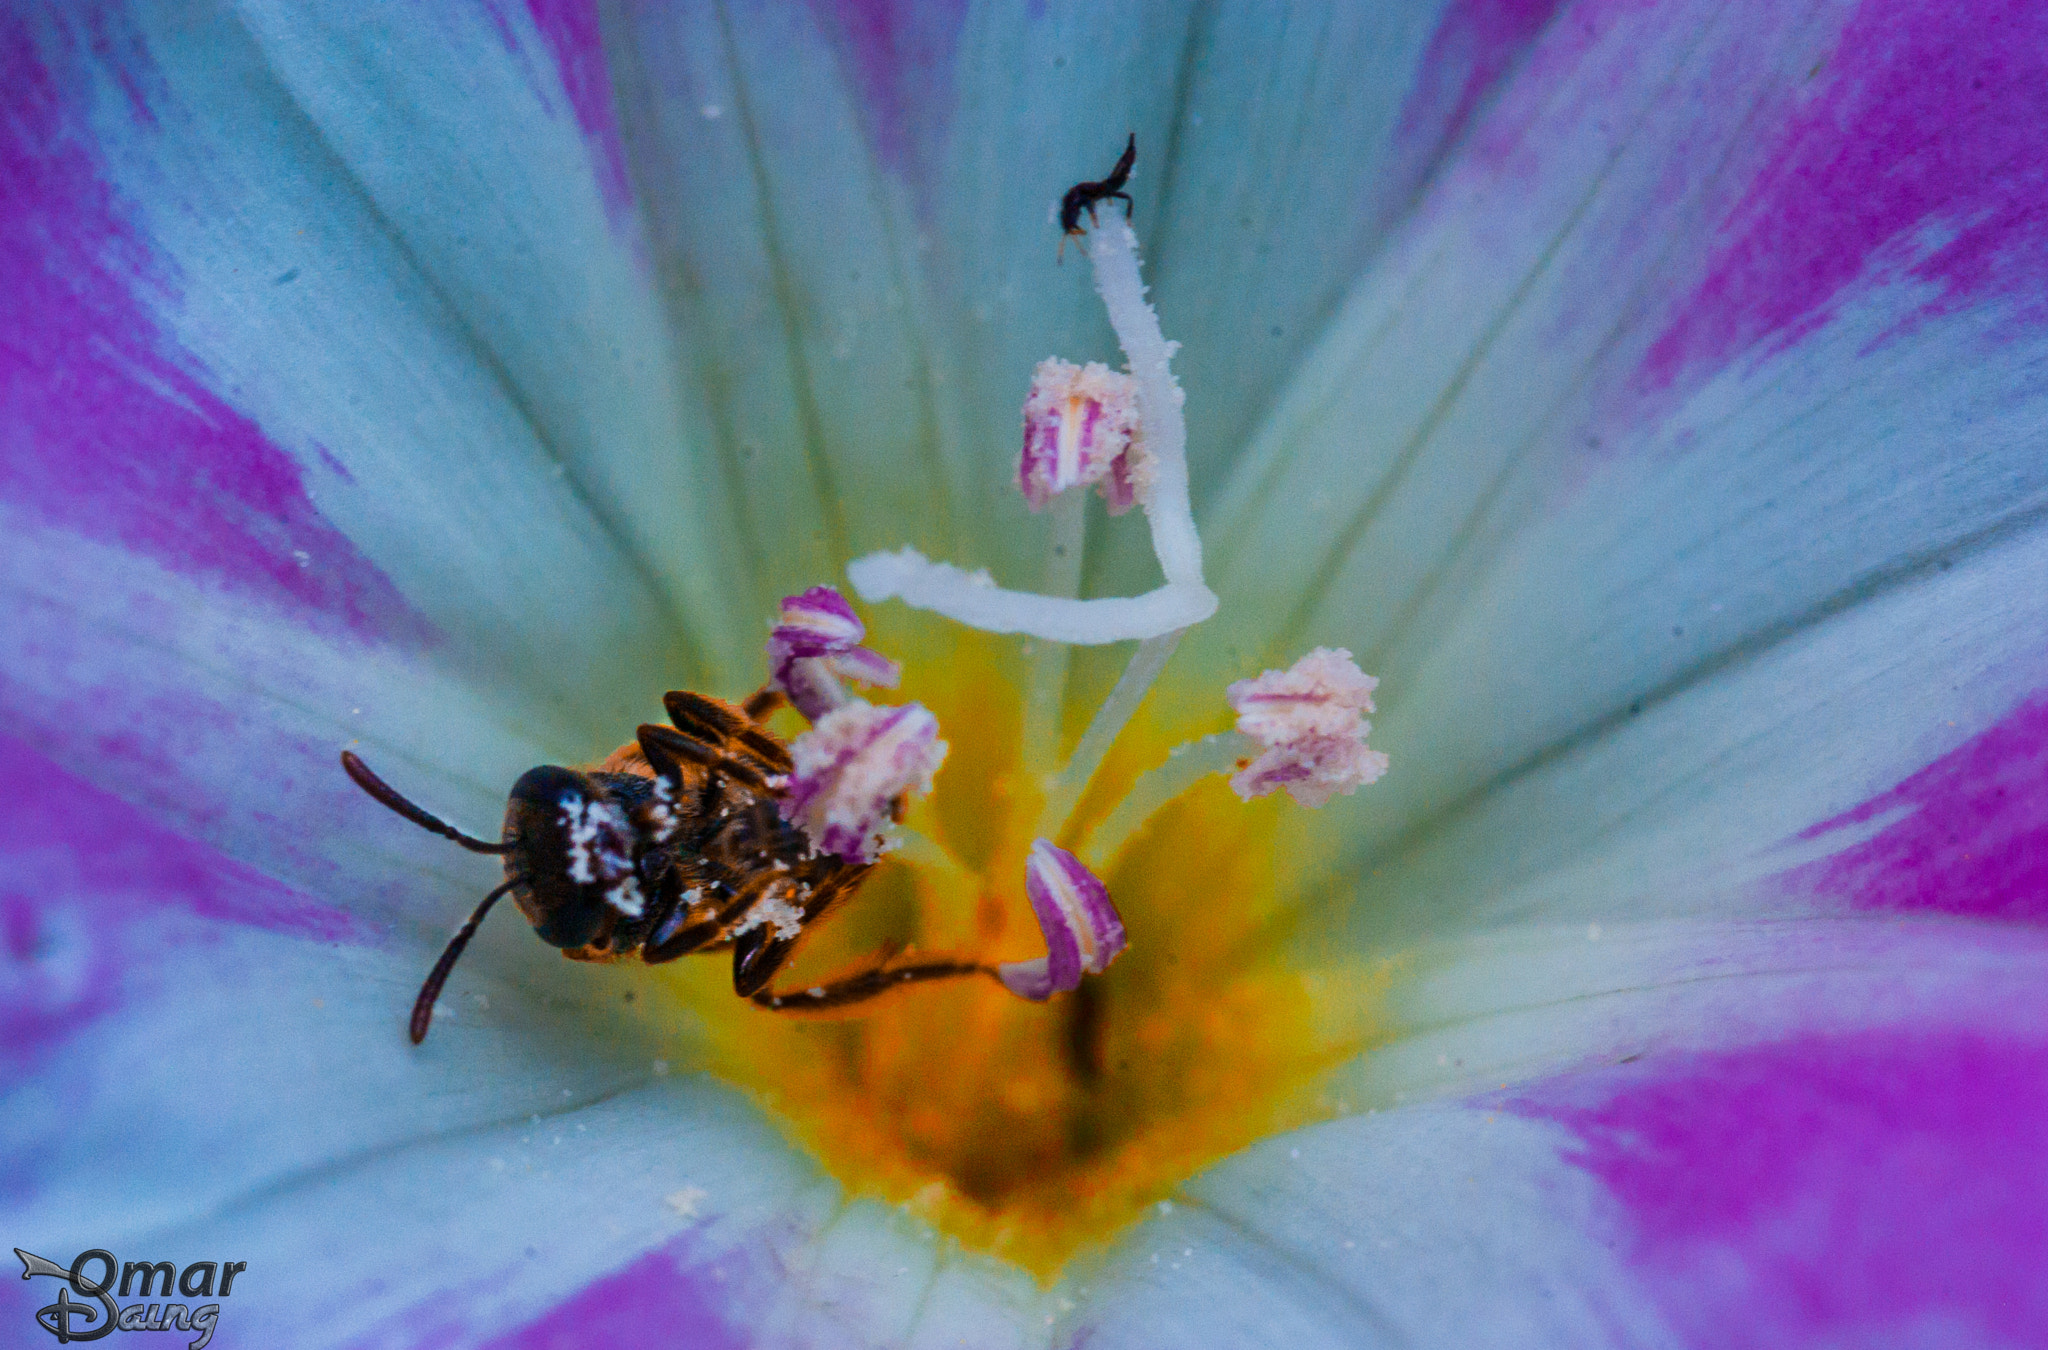 Pentax K10D + Sigma sample photo. Insects and flowers - Çiçek ve böcek photography